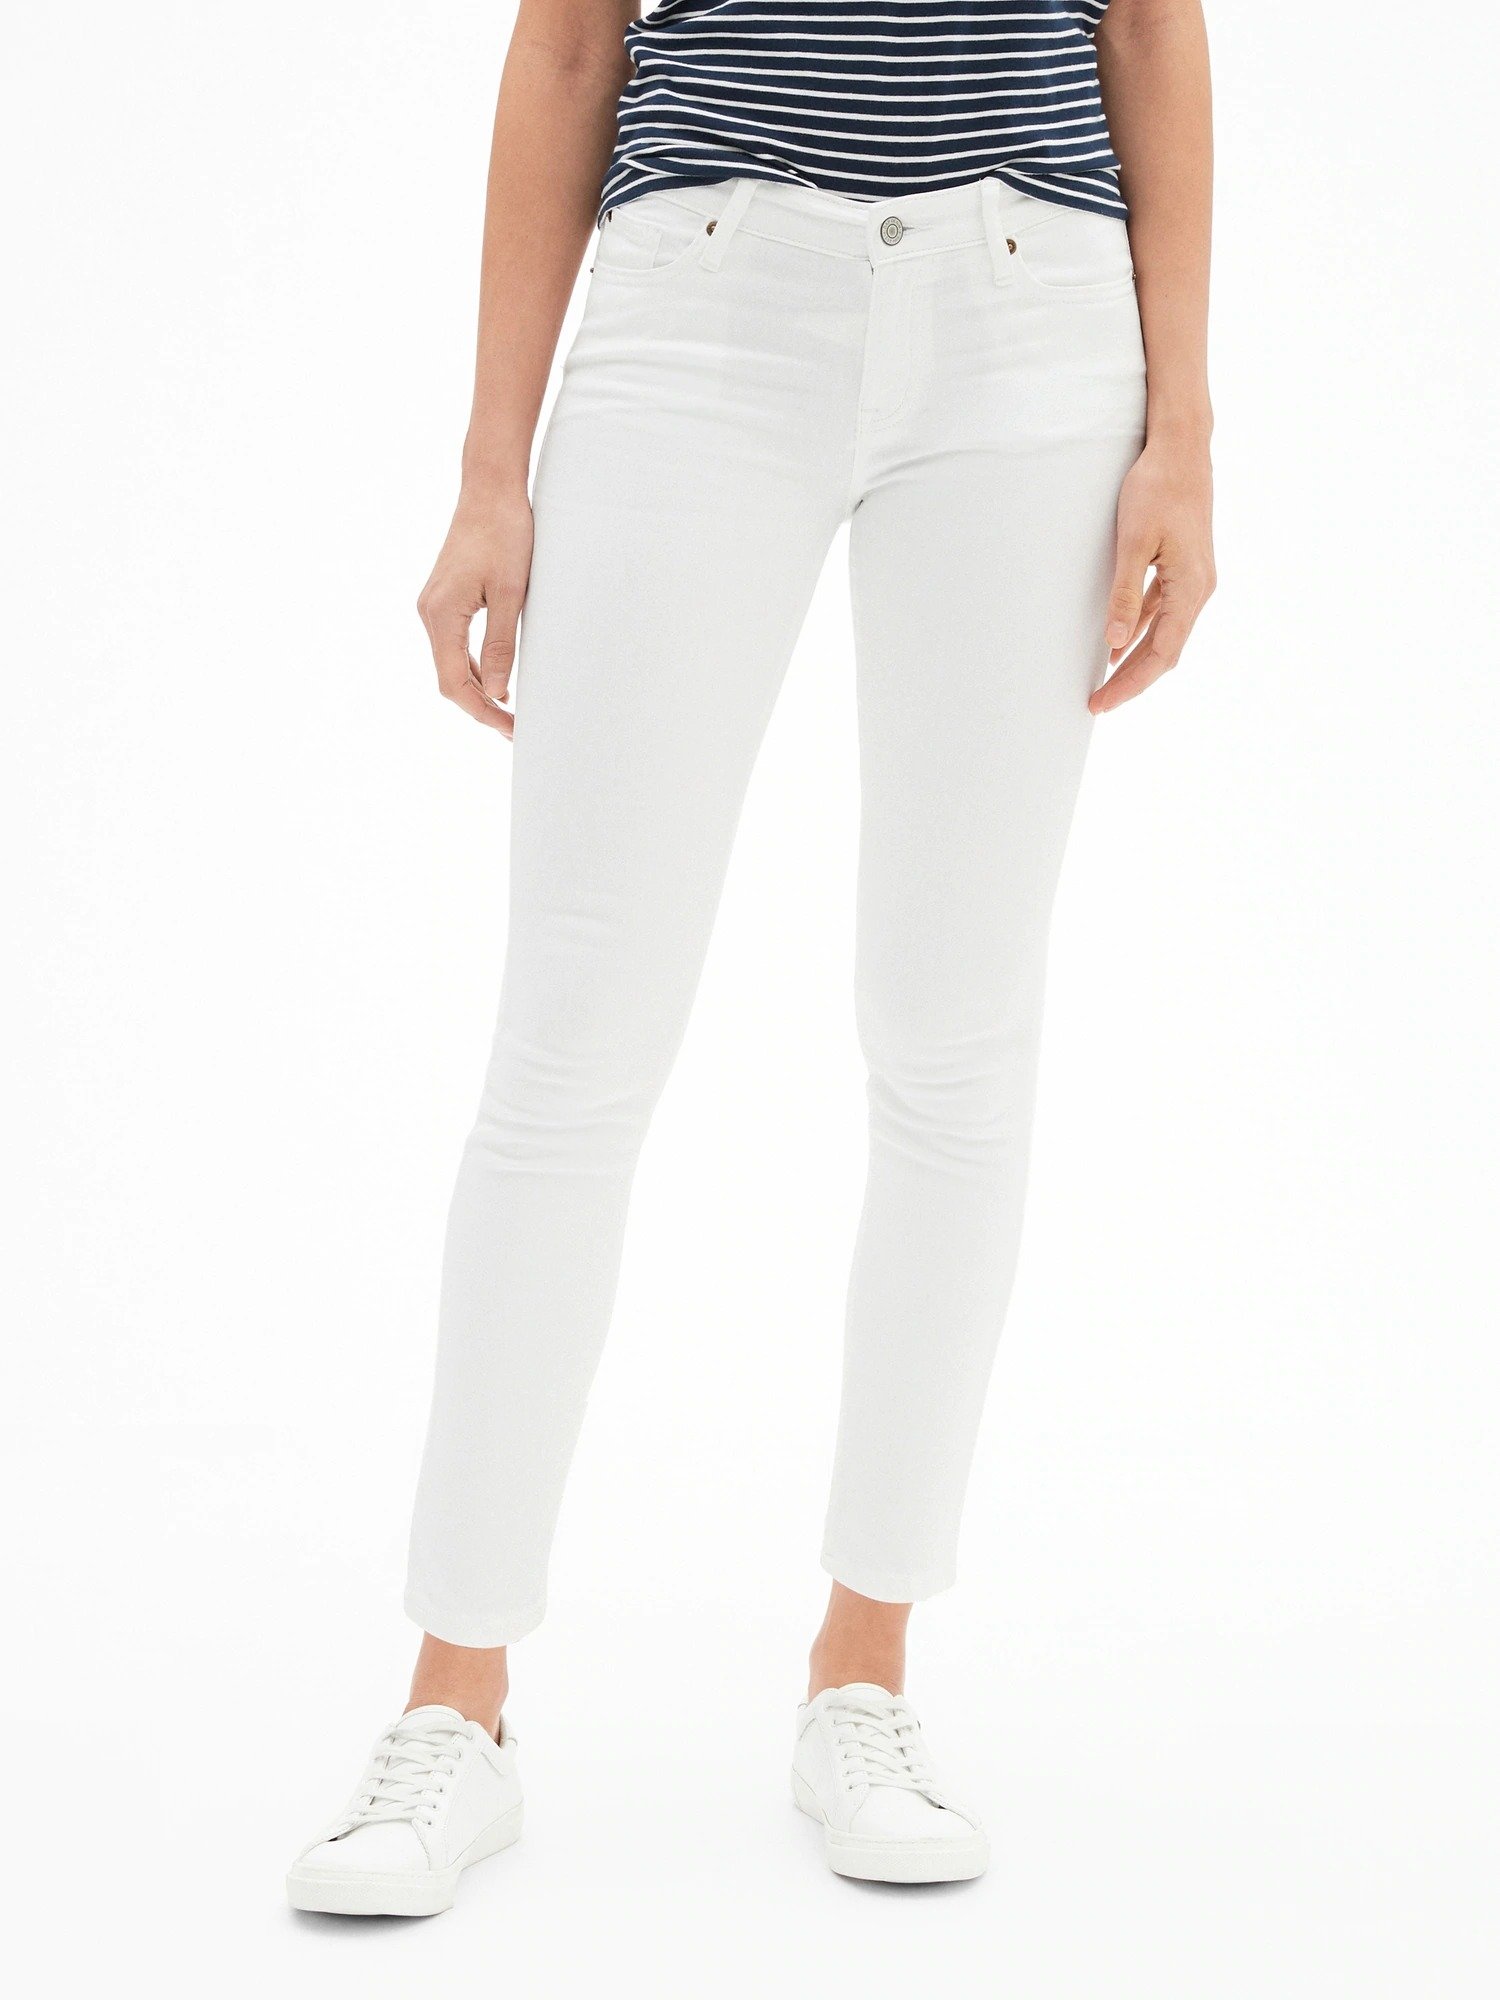 Orta Belli Super Skinny Jean Pantolon product image